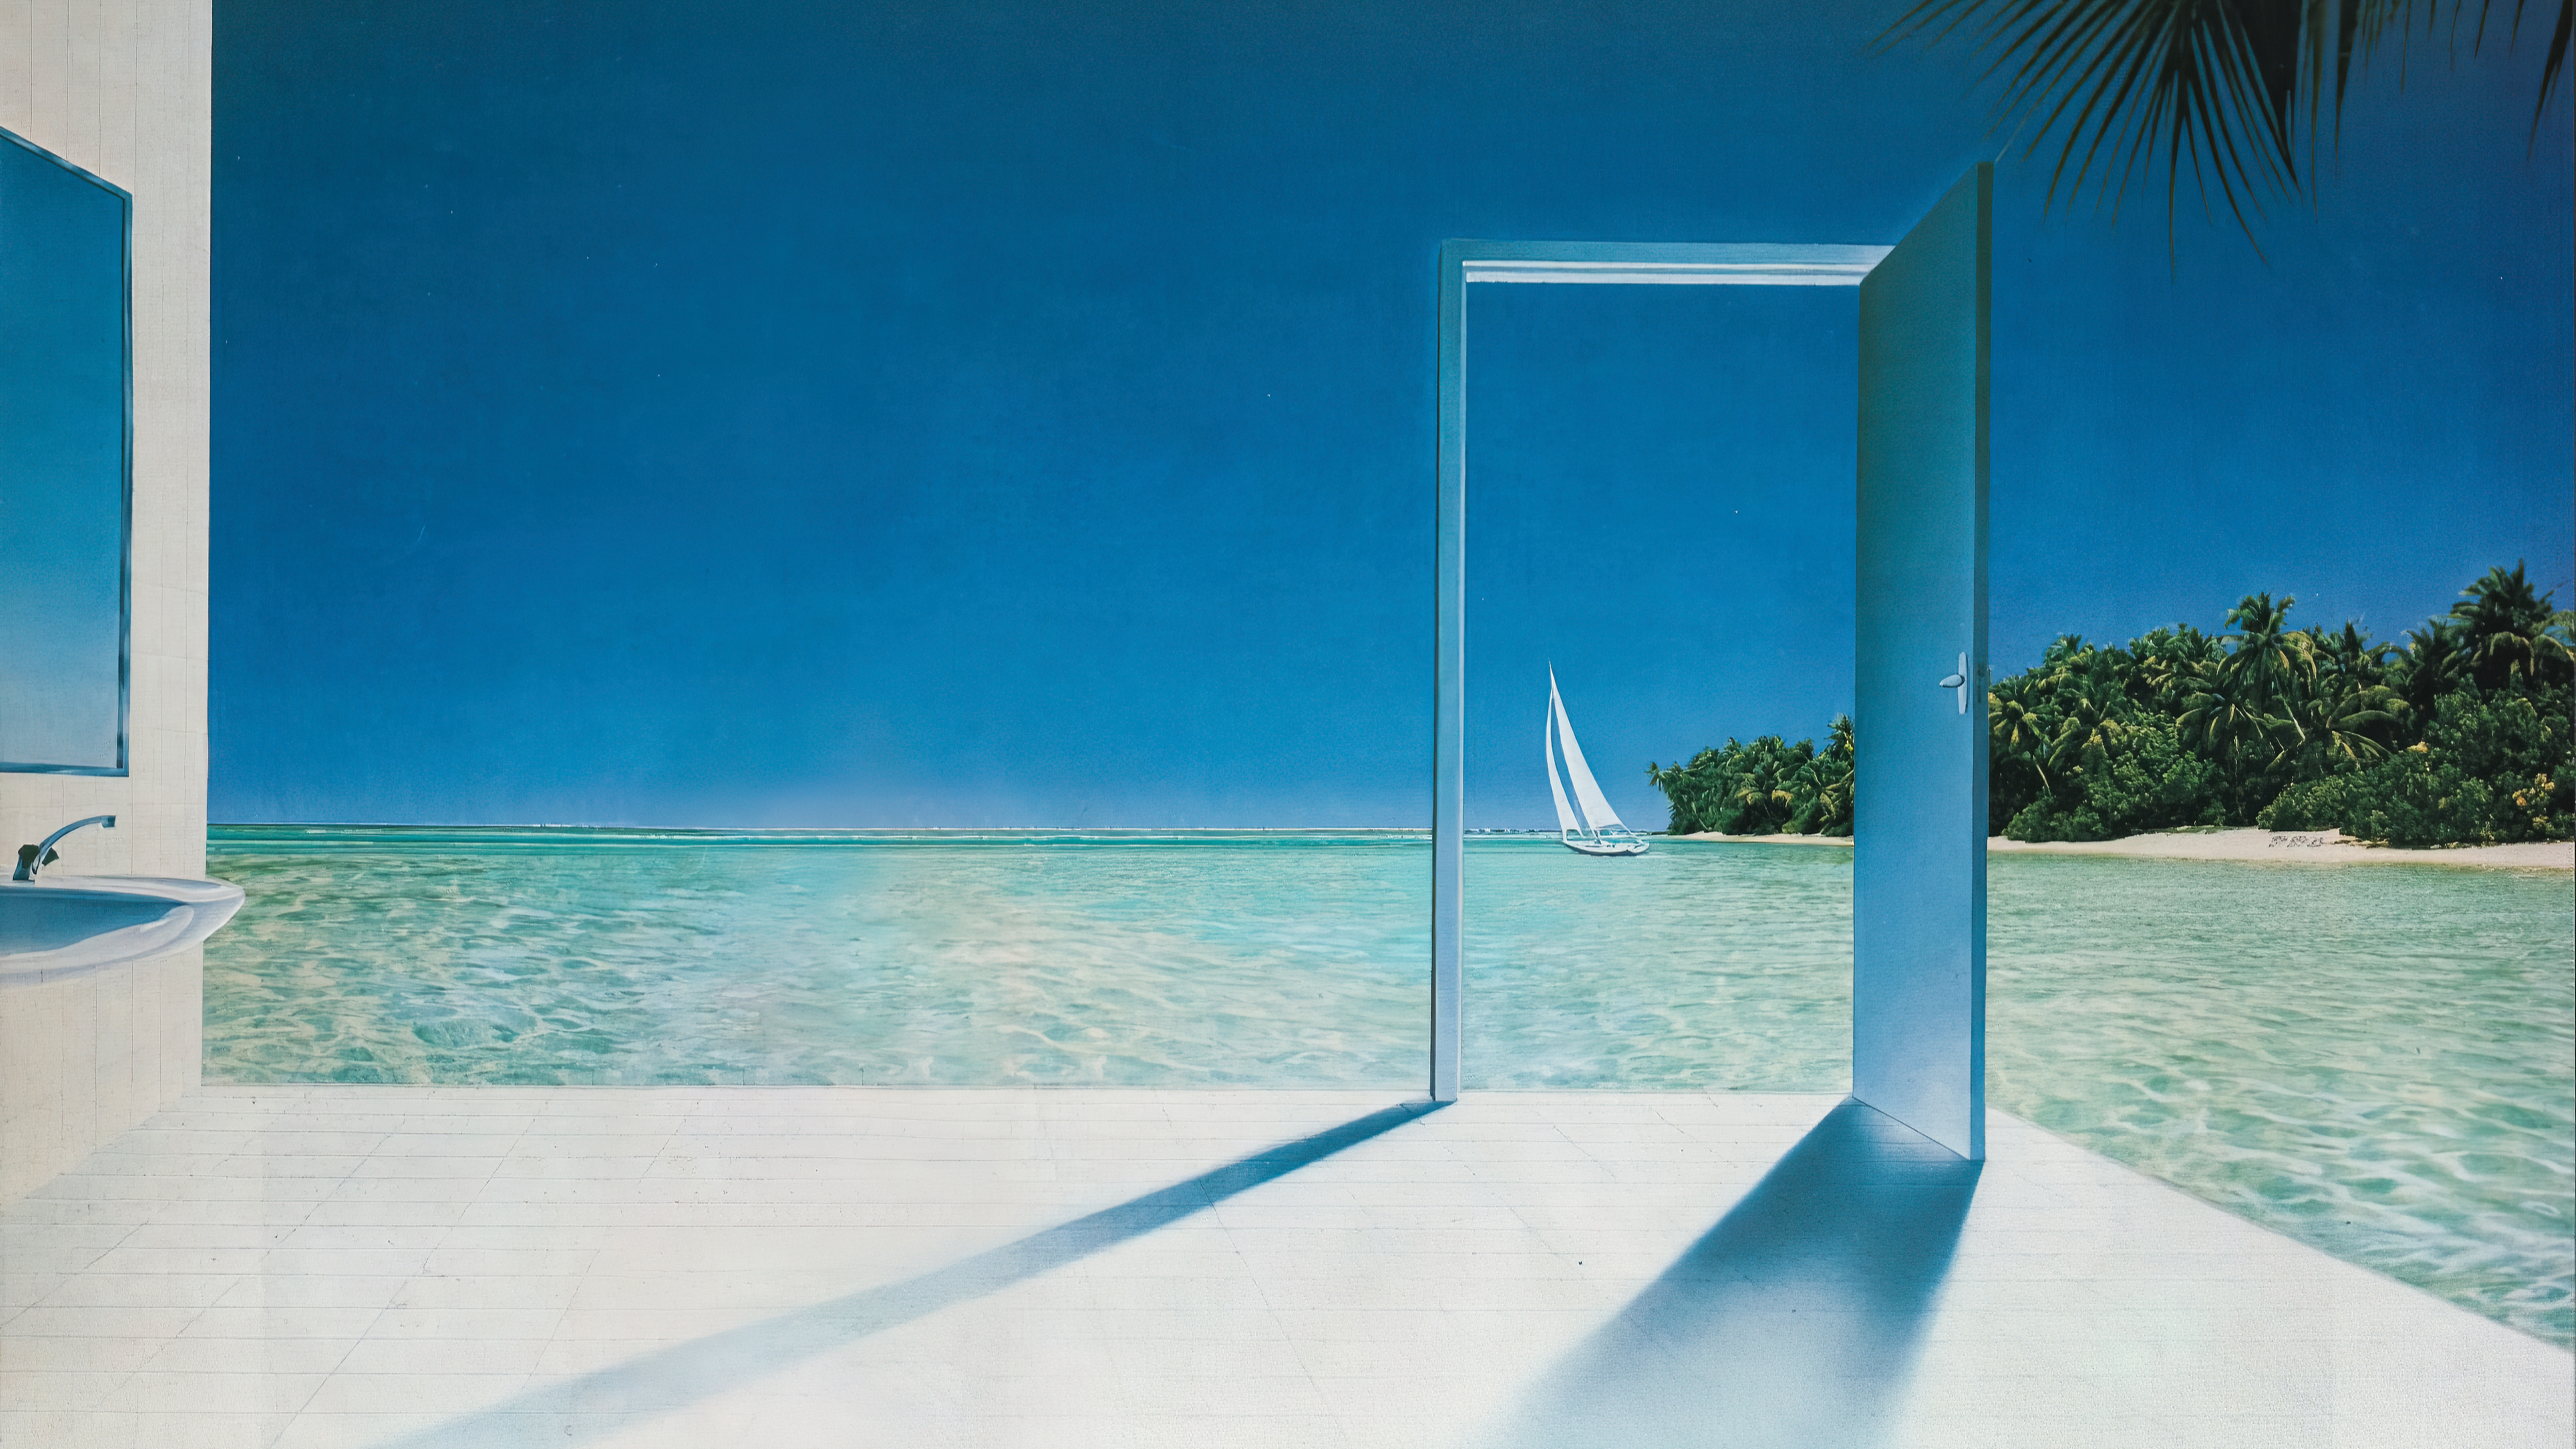 Open Door Seaside by Pierre Peyrolle [3840x2160]